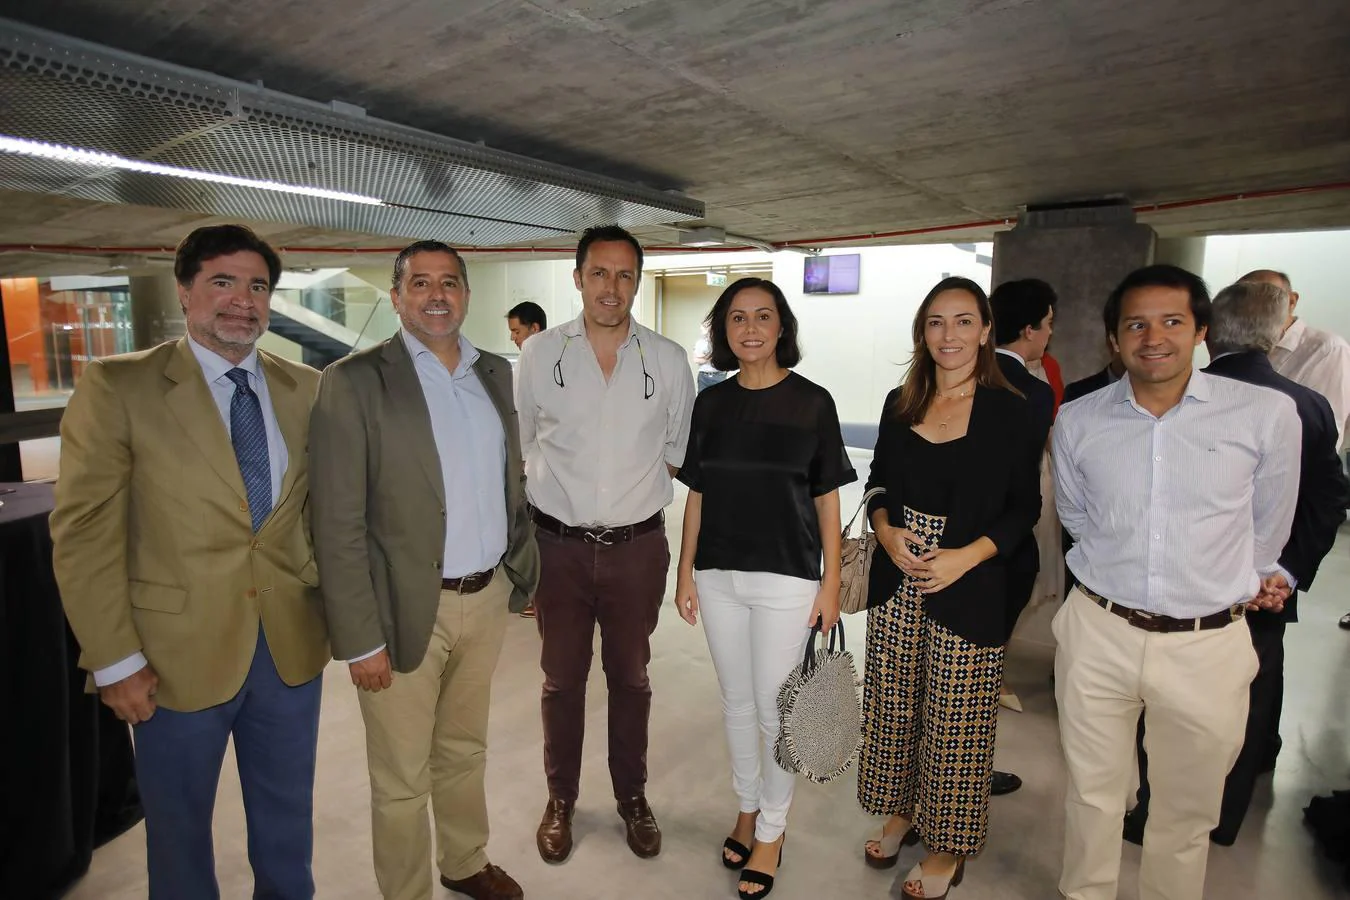 Óscar González-Barba, Álvaro Alés, Juancho González, Rocío Gutiérrez, Elena Muñoz y Gonzalo Goy